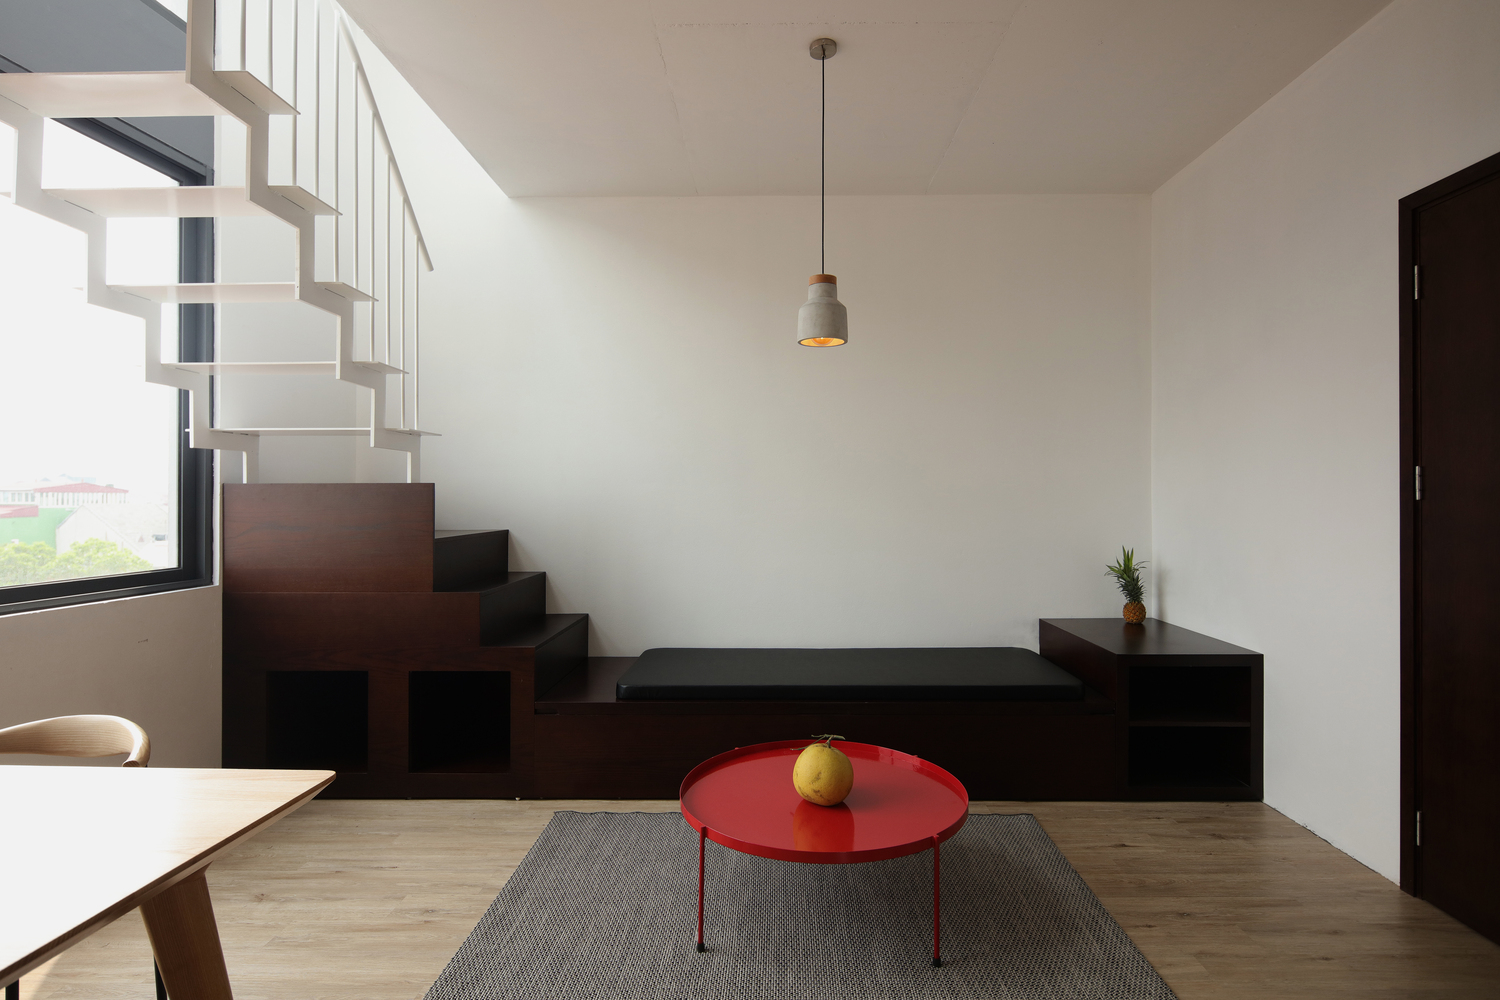 Hình ảnh phòng khách căn hộ cho thuê với thiết kế đơn giản, bàn trà màu đỏ nổi bật trên thảm trải màu xám